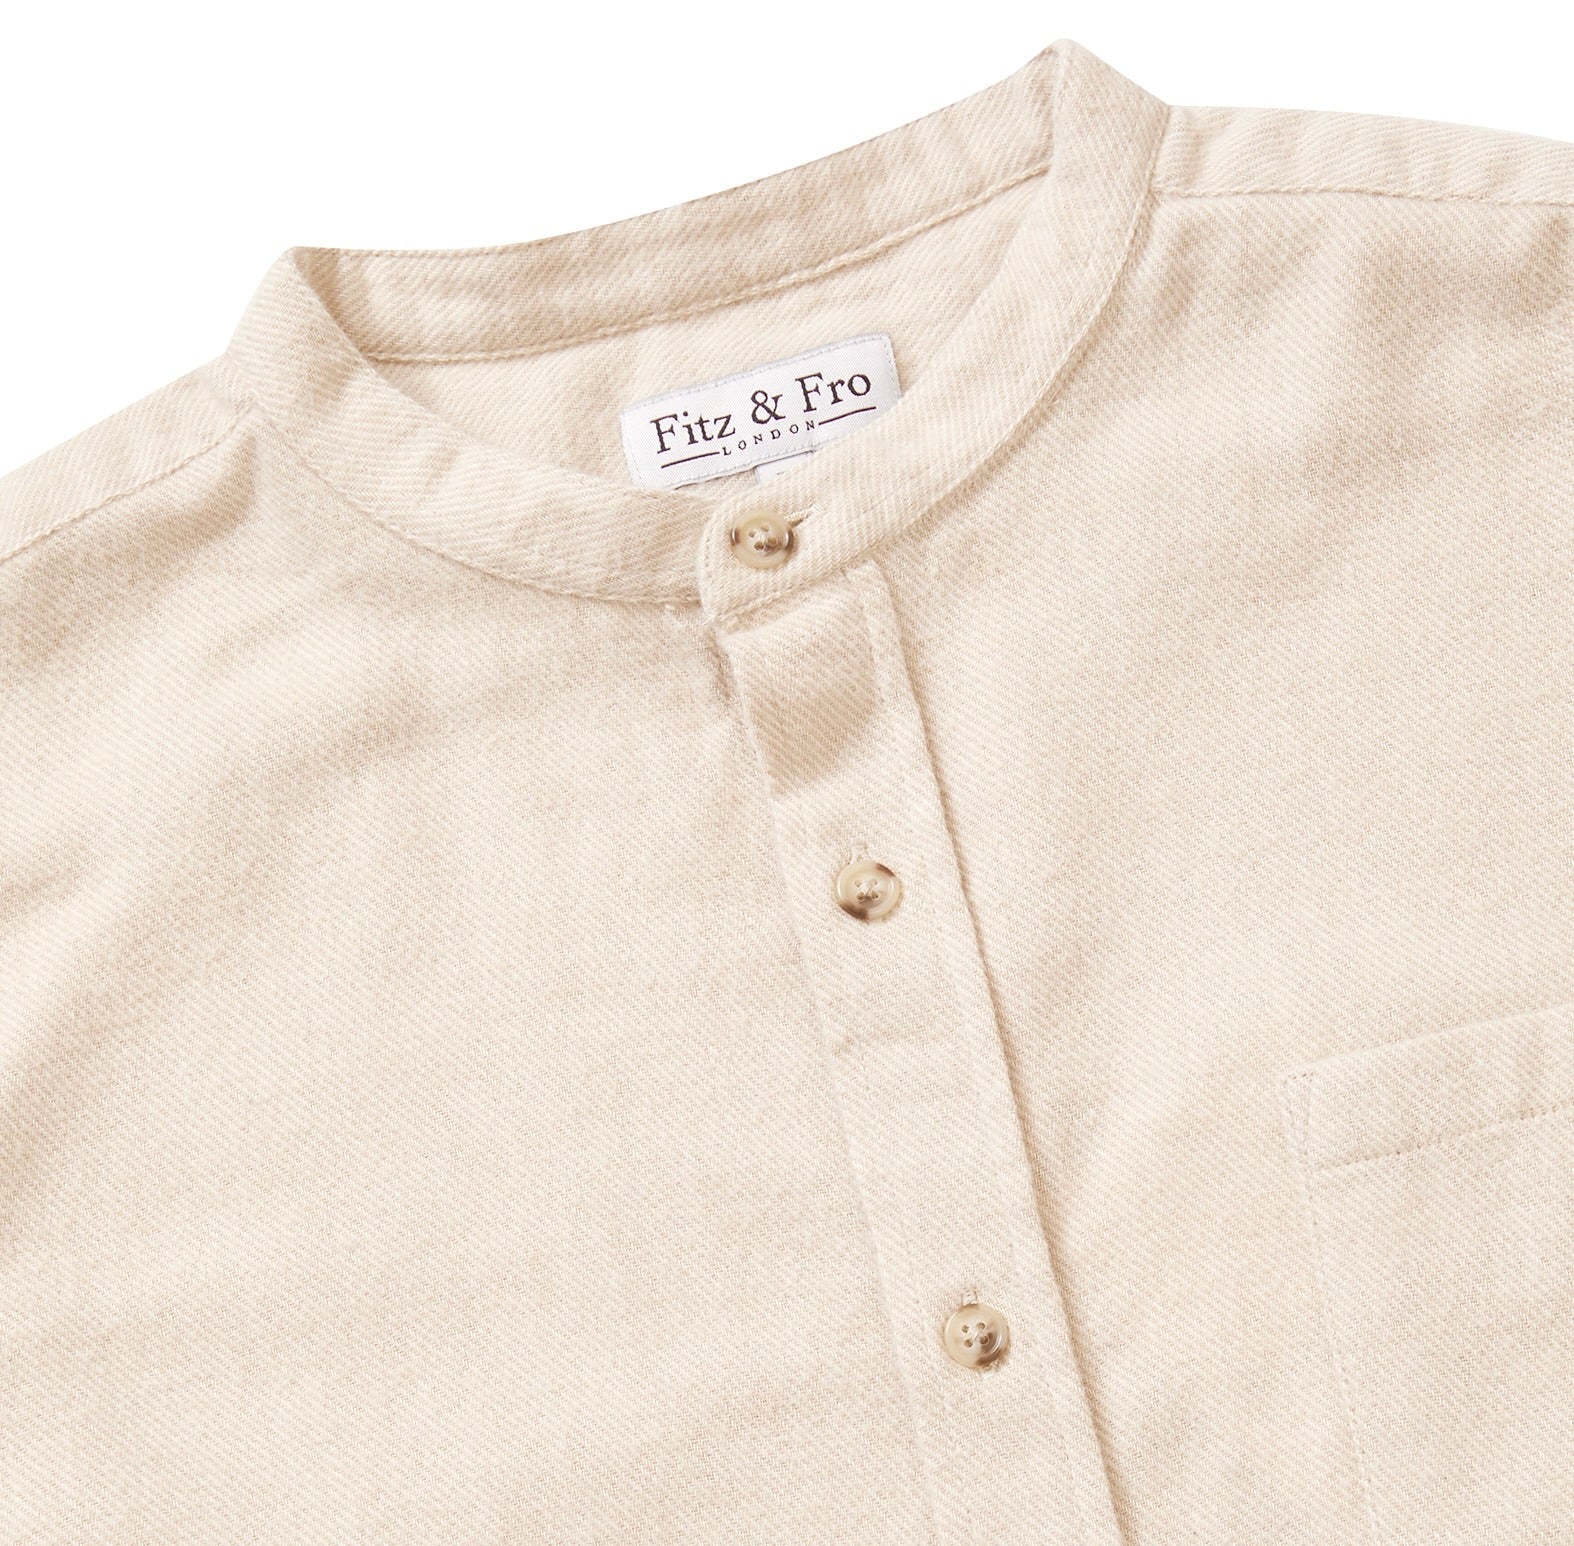 Brushed Organic Cotton Collarless Shirt - Ecru